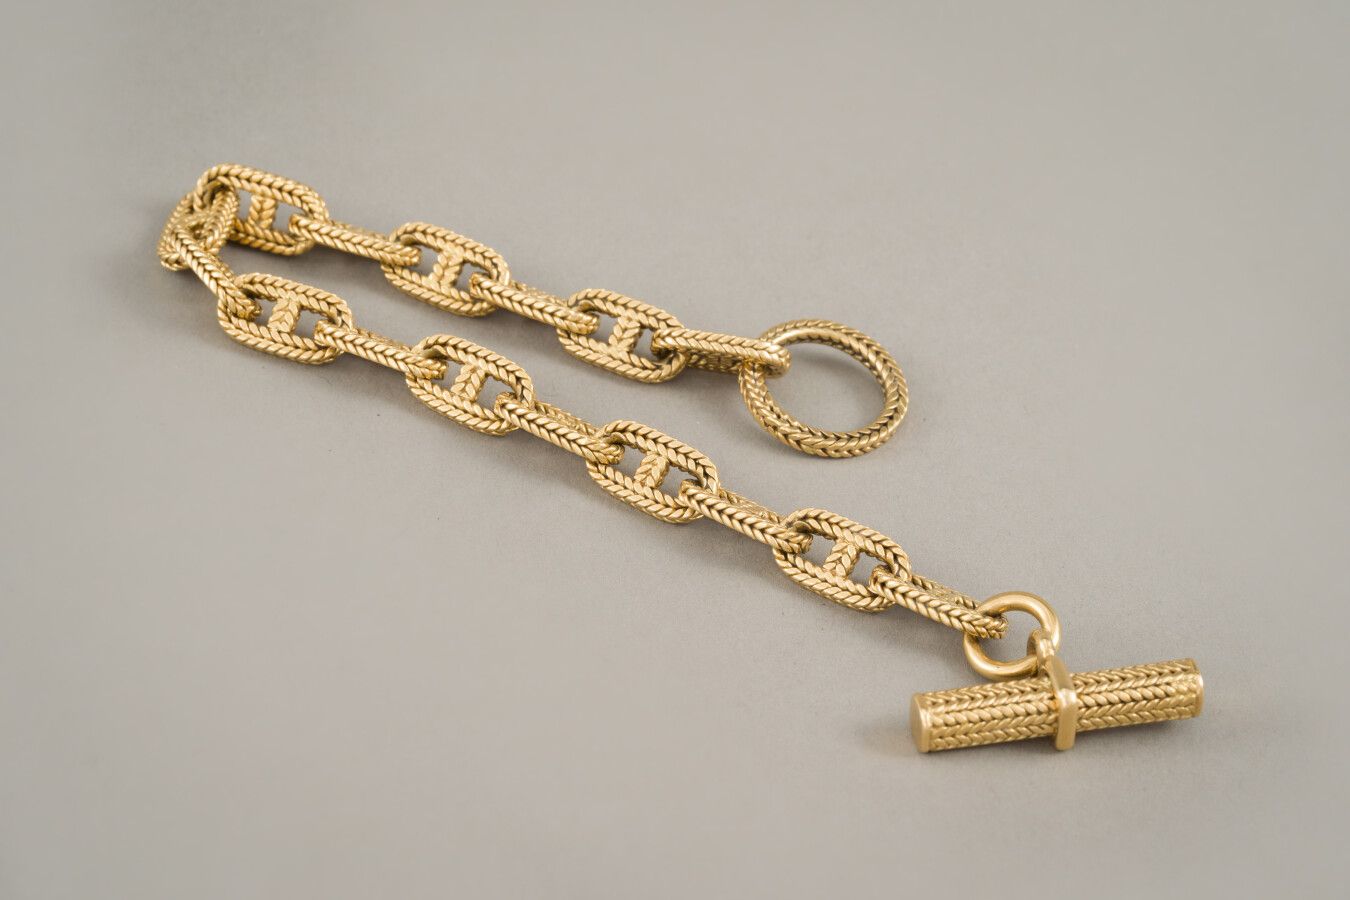 Null 96. Bracciale "Anchor chain" in oro giallo

750/1000 (18 carati) firmato He&hellip;